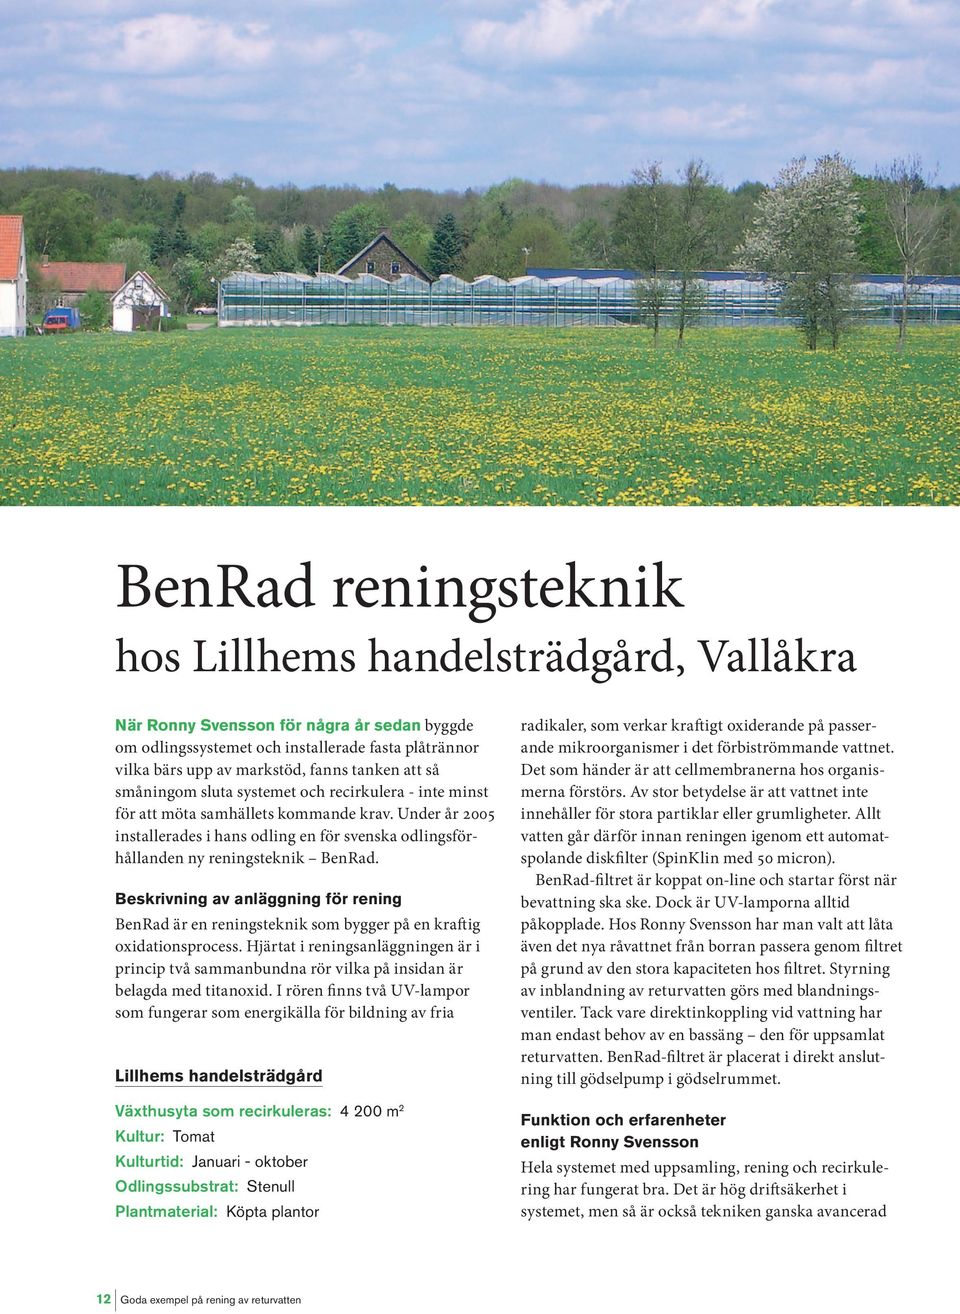 Under år 2005 installerades i hans odling en för svenska odlingsförhållanden ny reningsteknik BenRad.